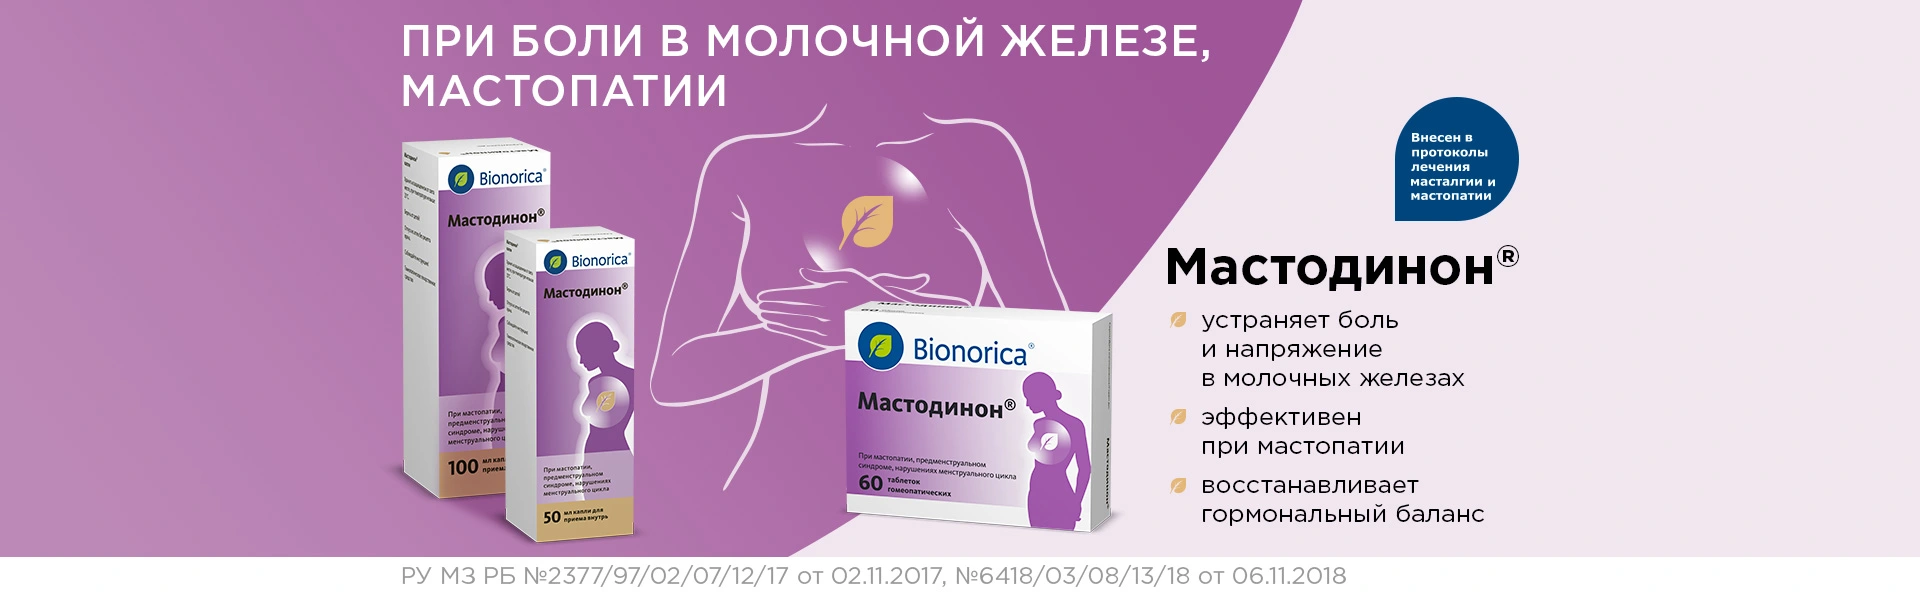 Мастодинон для лечения боли в молочной железе, мастопатии